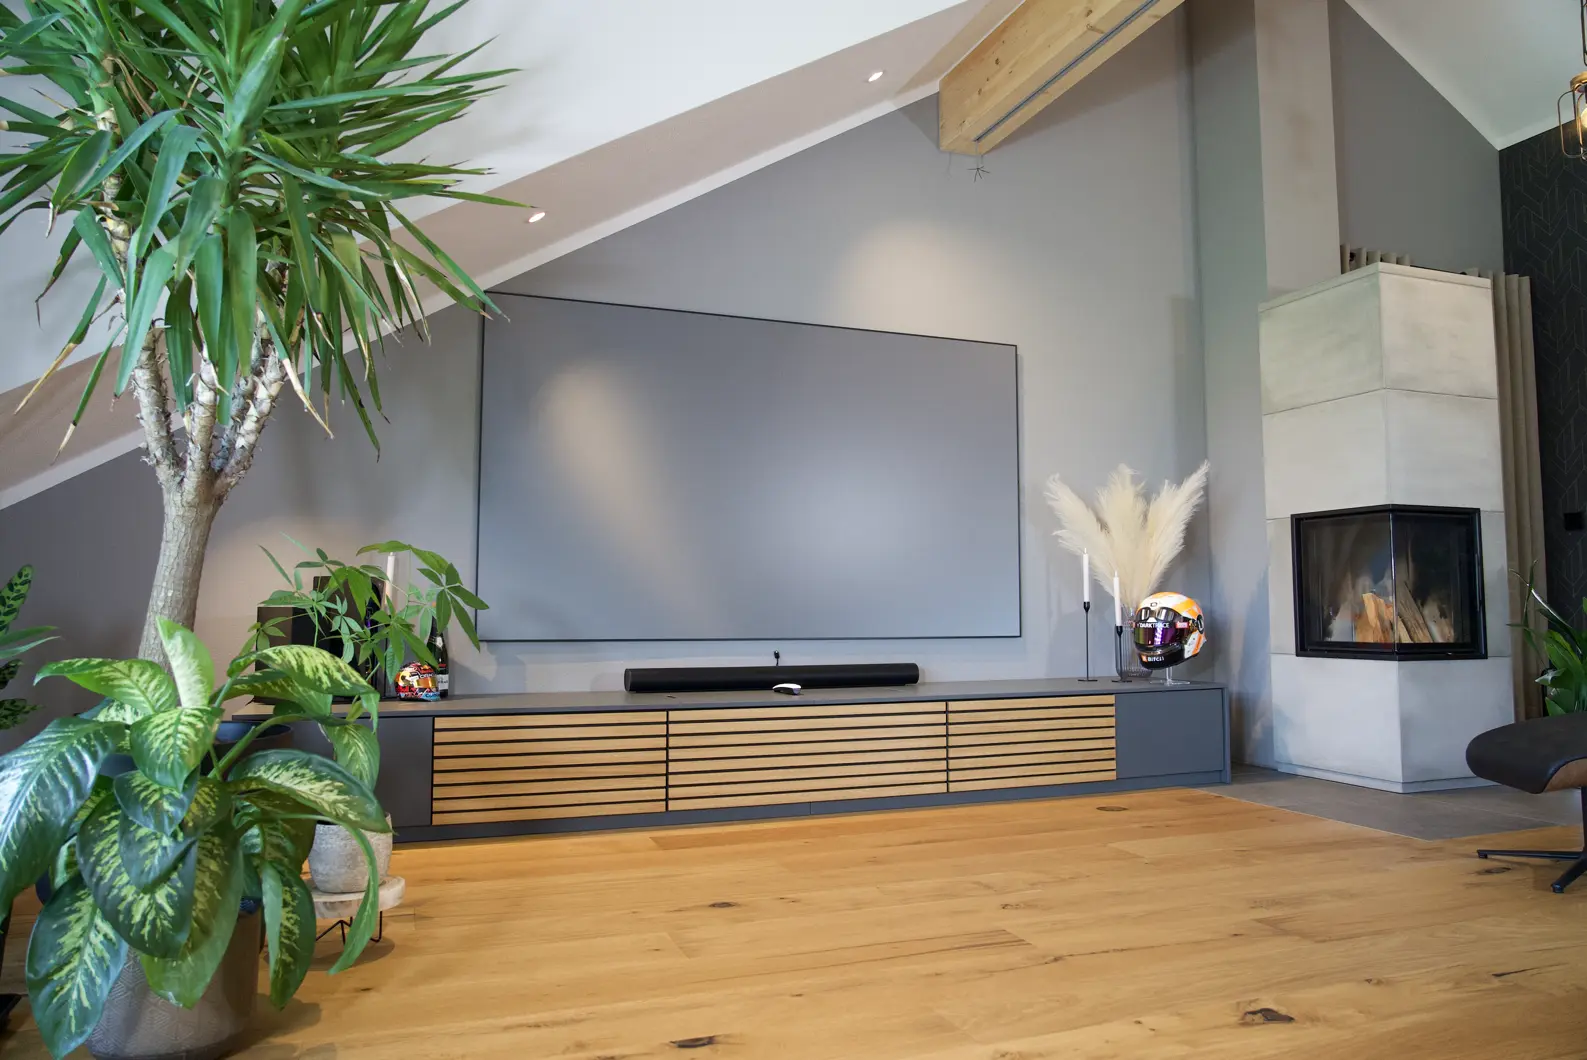 Heimkino im Wohnzimmer made by AVITECT Studio Ingolstadt. Ein modernes Wohnzimmer mit warmen Holztönen und vielen Pflanzen. Der Laser TV ist in ein maßgeschneidertes Lowboard eingelassen und eine 100 Zoll Leinwand fügt sich elegant in das Wohnzimmer ein.